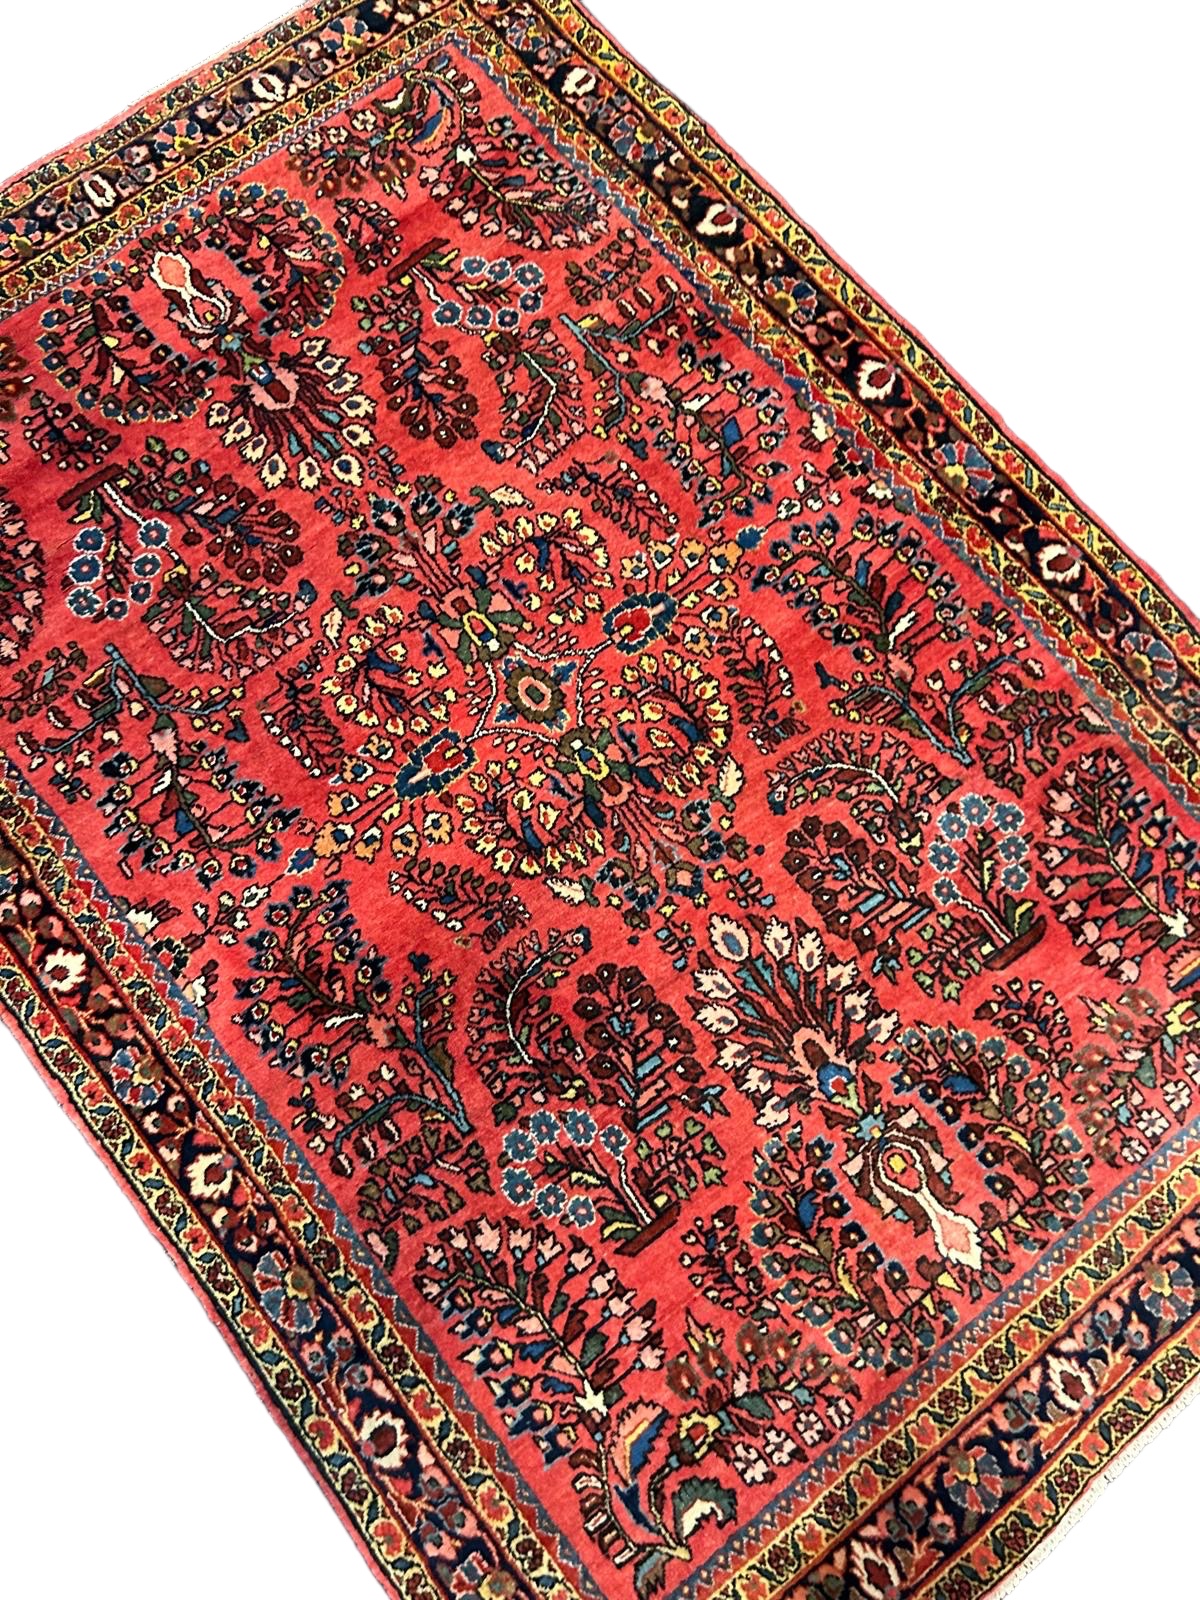 A Sarouk rug, Persia, circa 1930 - Image 3 of 4